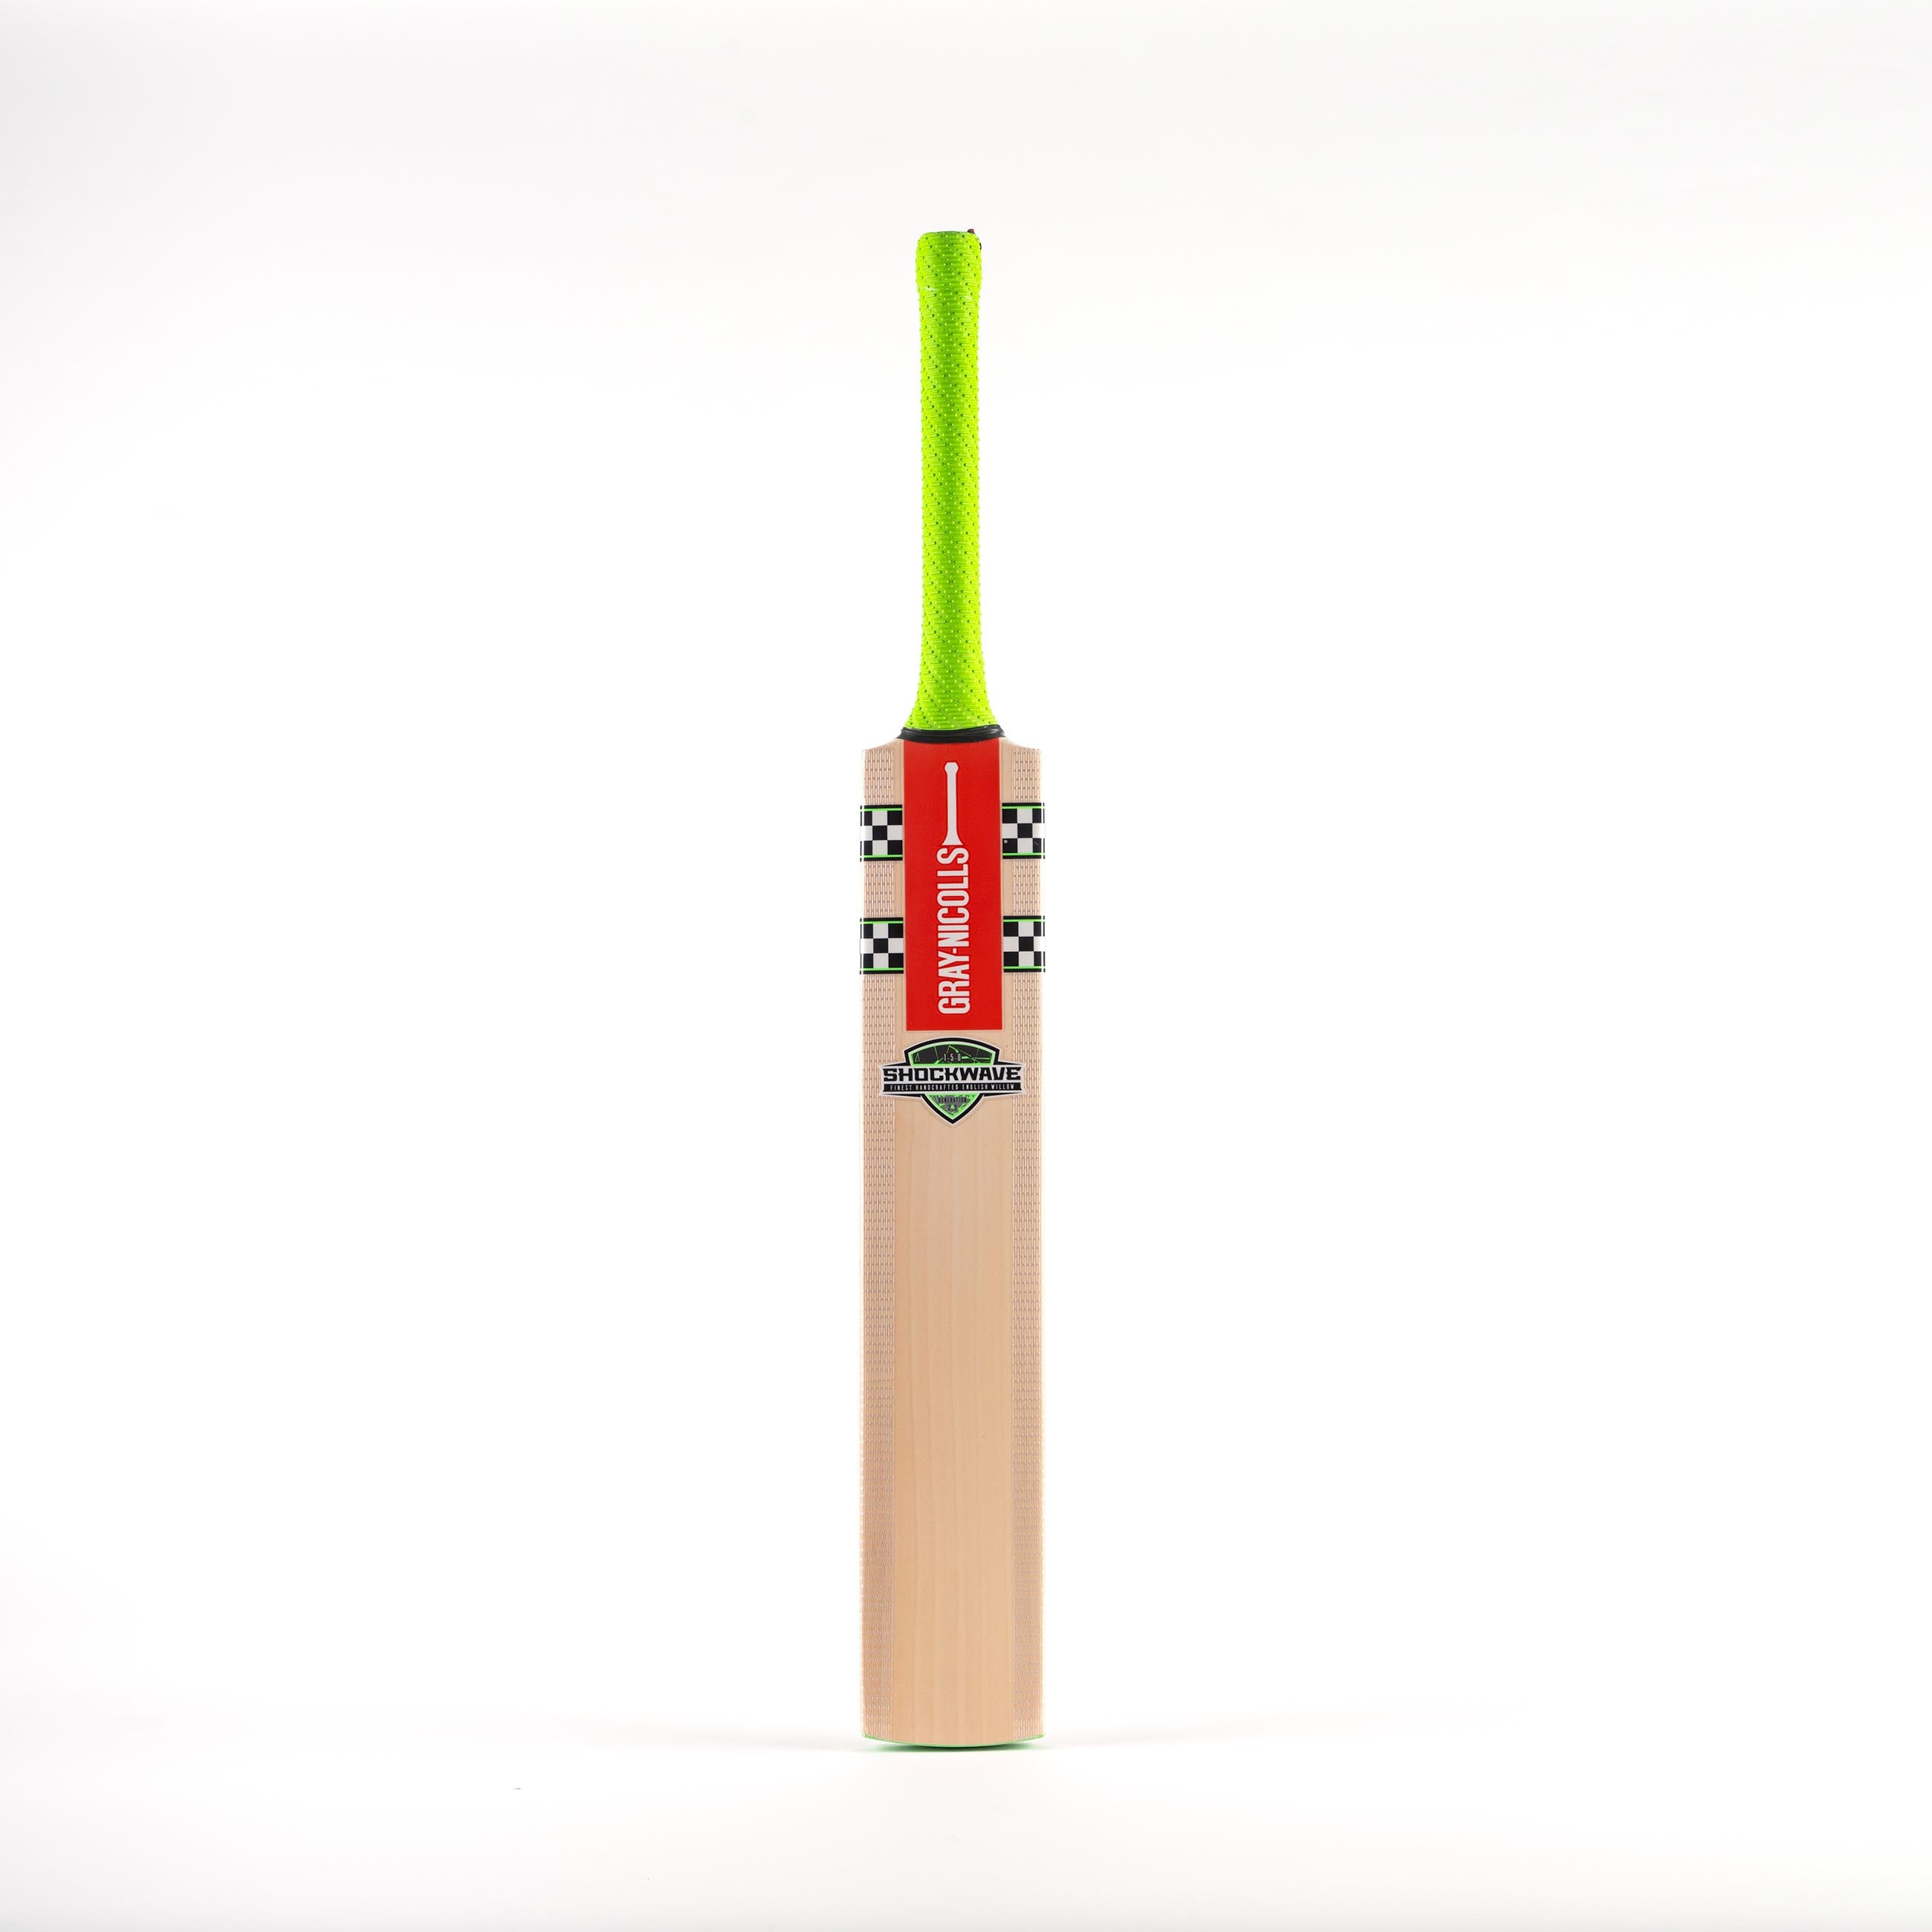 Shockwave 2.3 150 Adult Cricket Bat